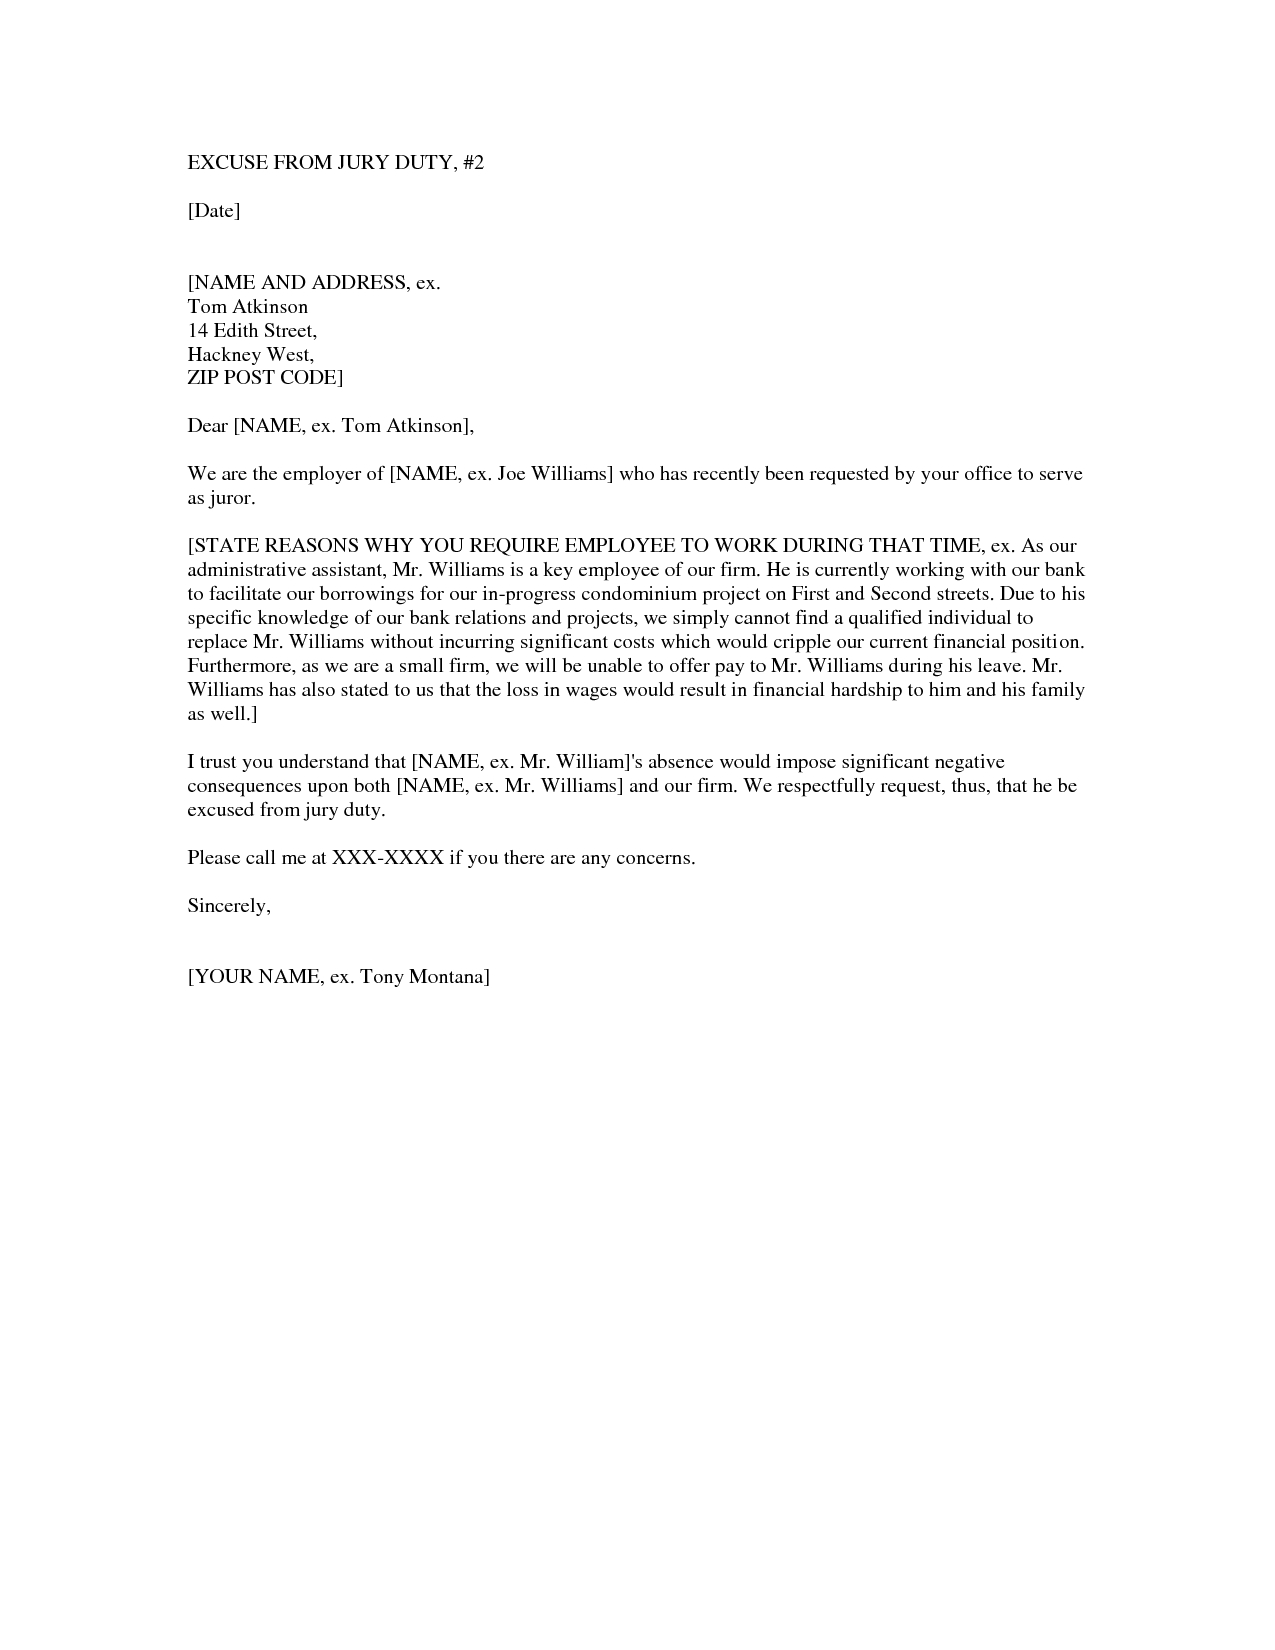 Jury Duty Medical Excuse Letter from www.futuramafan.net